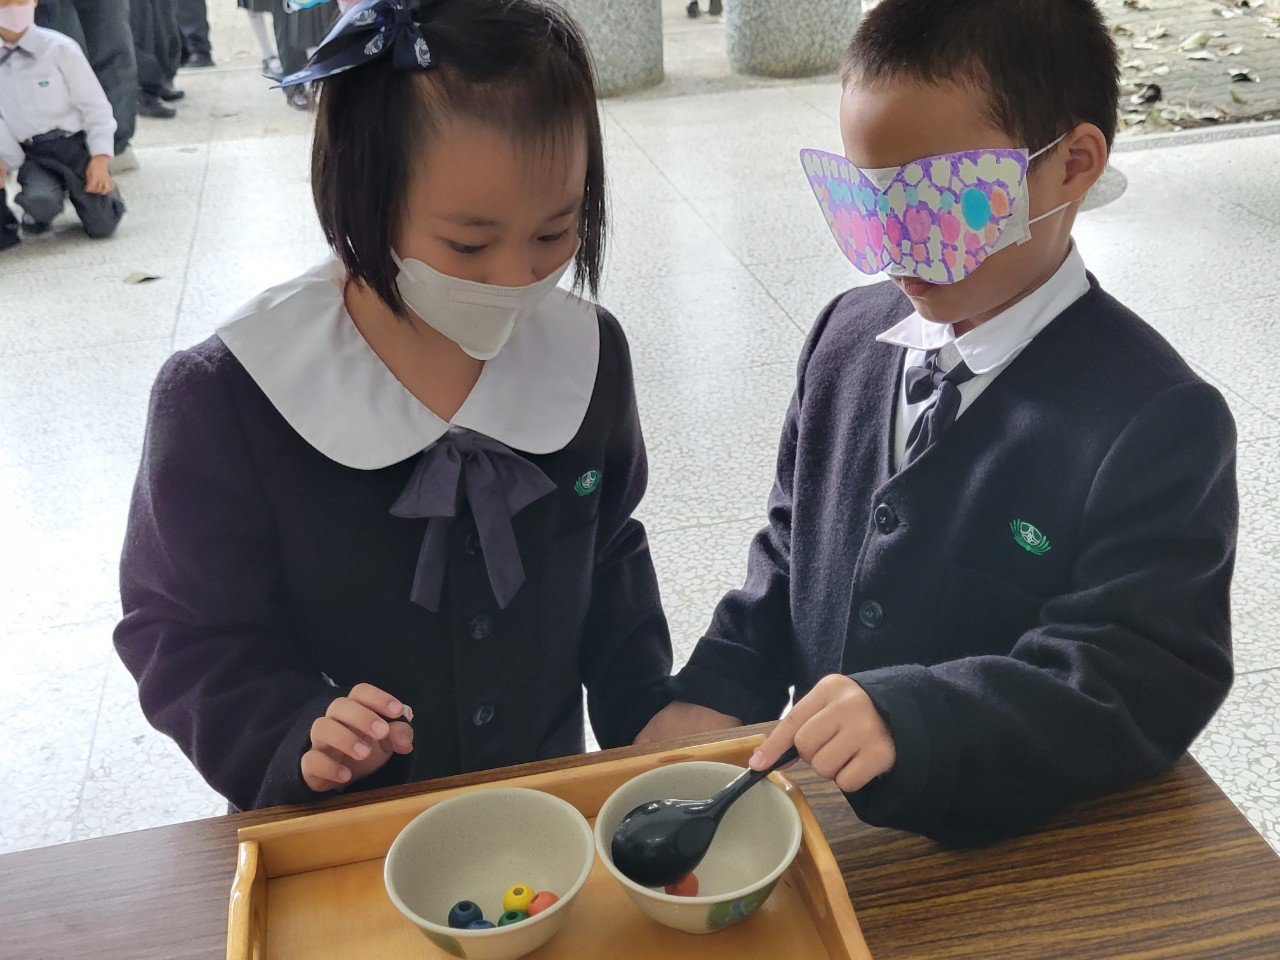 一年級小朋友戴上自製眼罩，藉由同伴的引導，用湯匙將盤中物舀至空碗中。